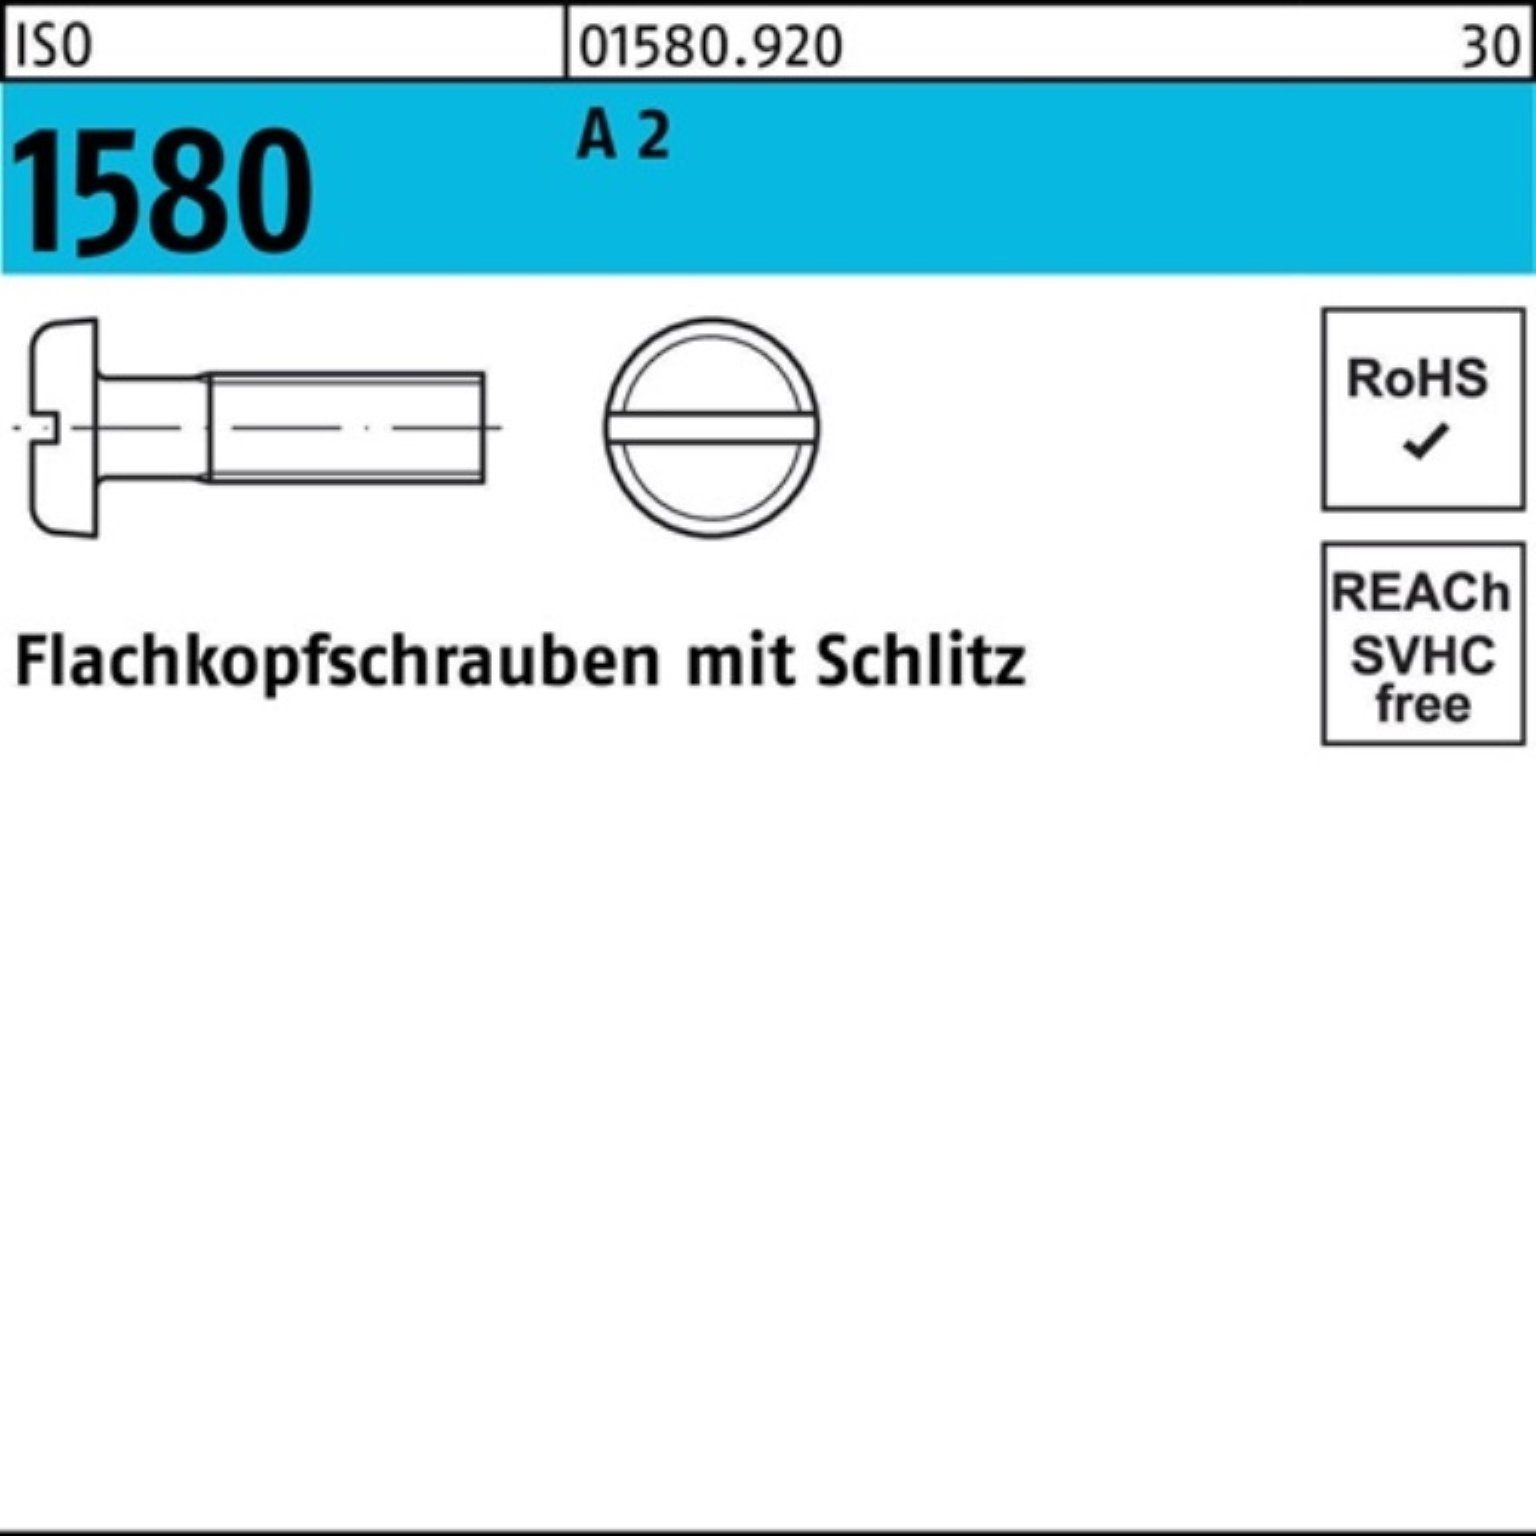 A IS Stück 40 ISO M4x Schraube Flachkopfschraube Reyher Pack 2 500 500er 1580 Schlitz